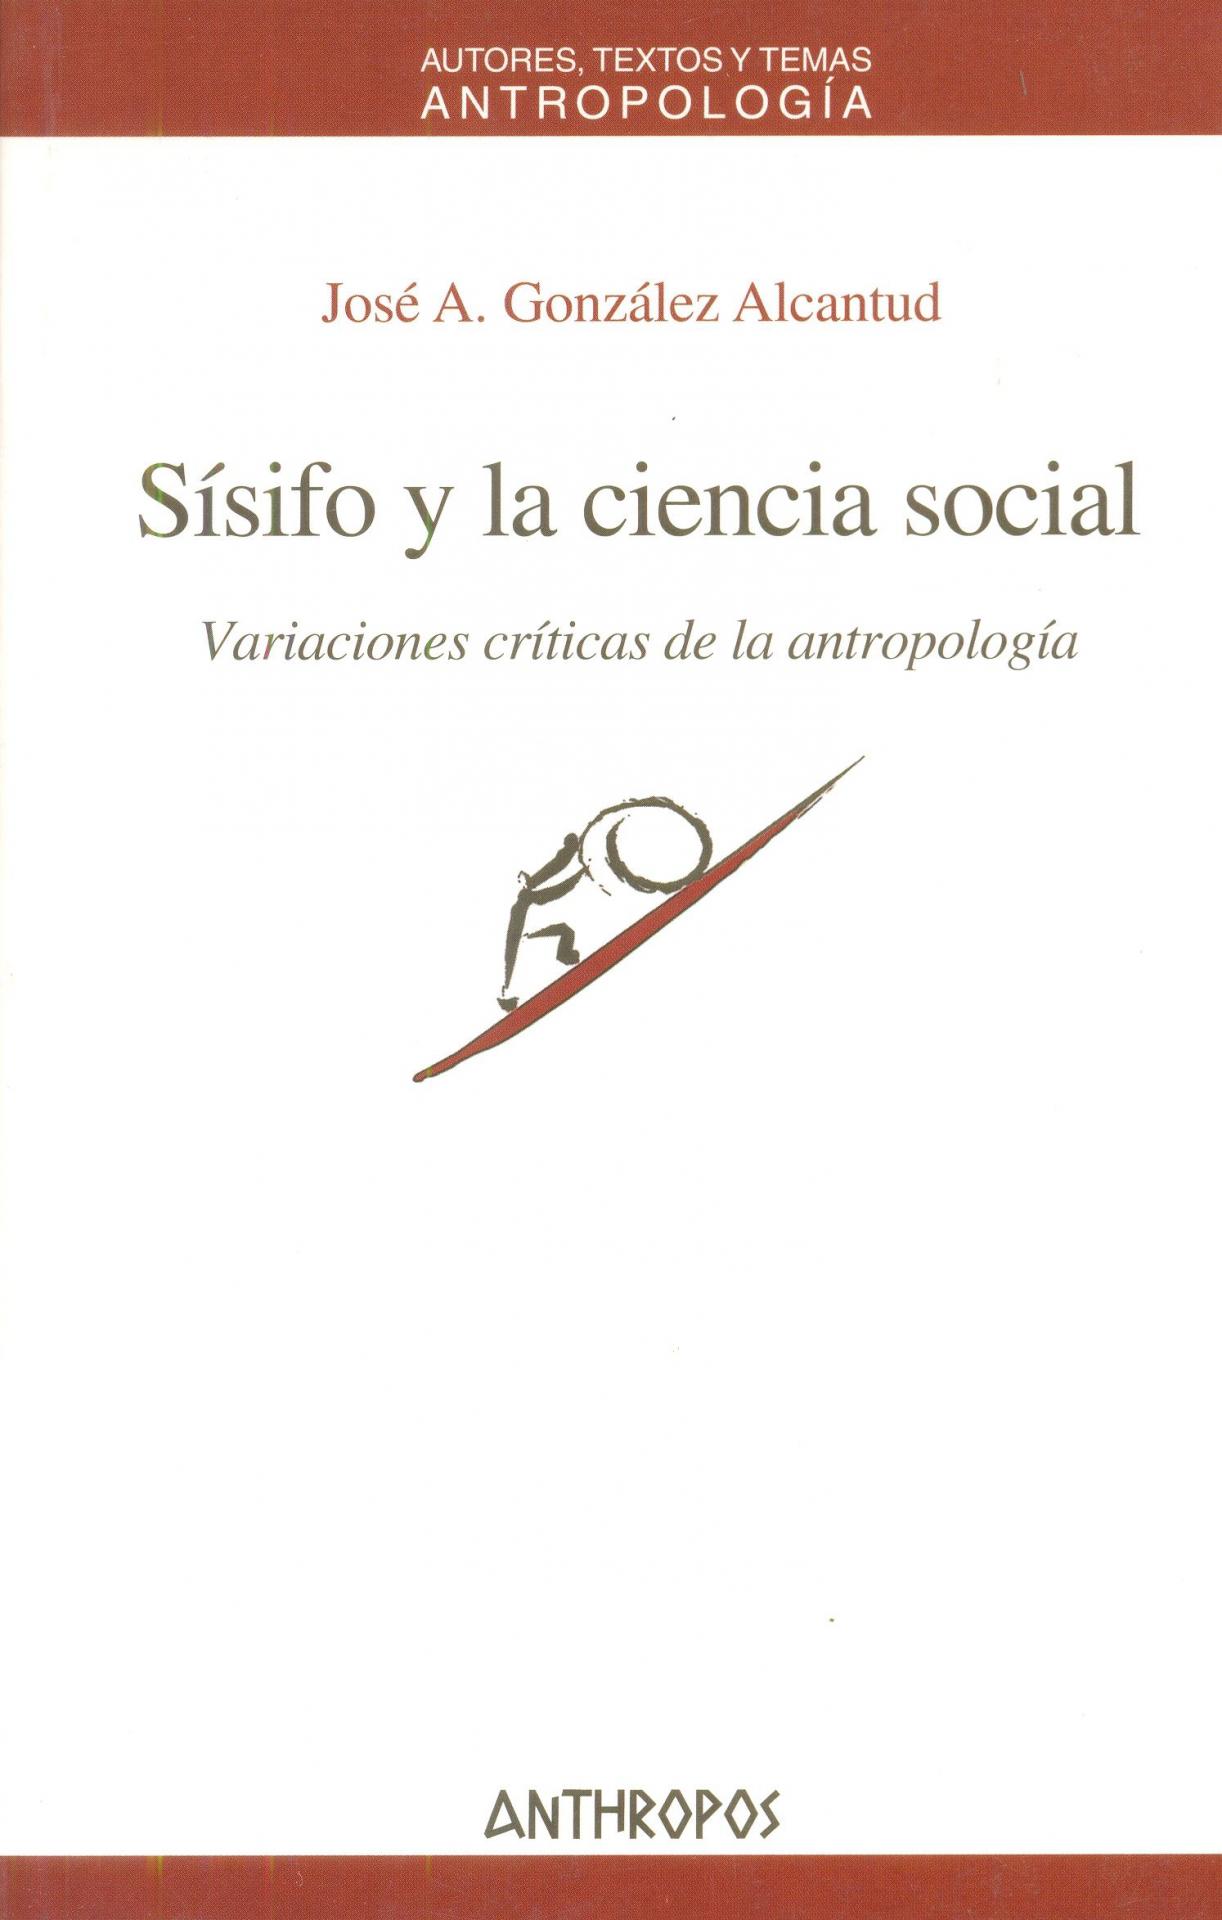 SÍSIFO Y LA CIENCIA SOCIAL. Variaciones críticas de la antropología. González Alcantud, JA.